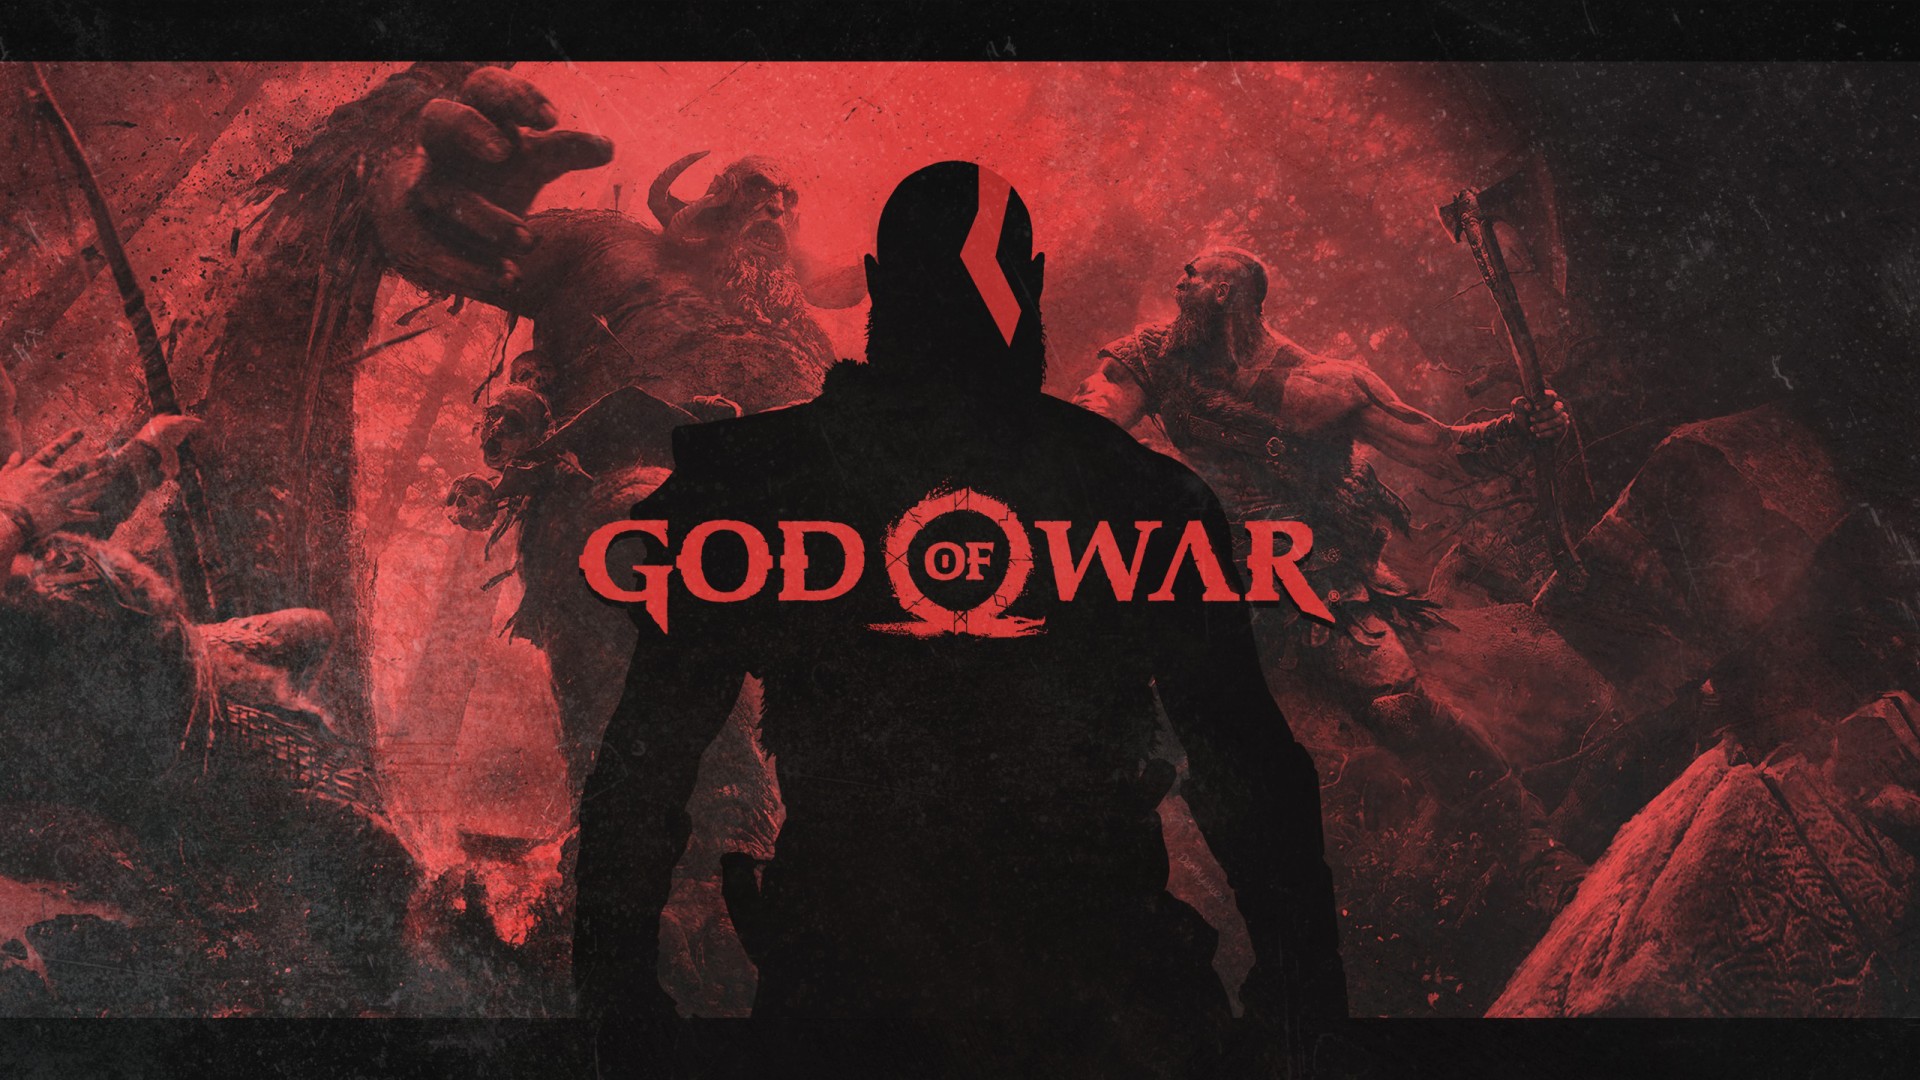 جدول فروش هفتگی بریتانیا: بازگشت دوباره بازی God of War به صدر